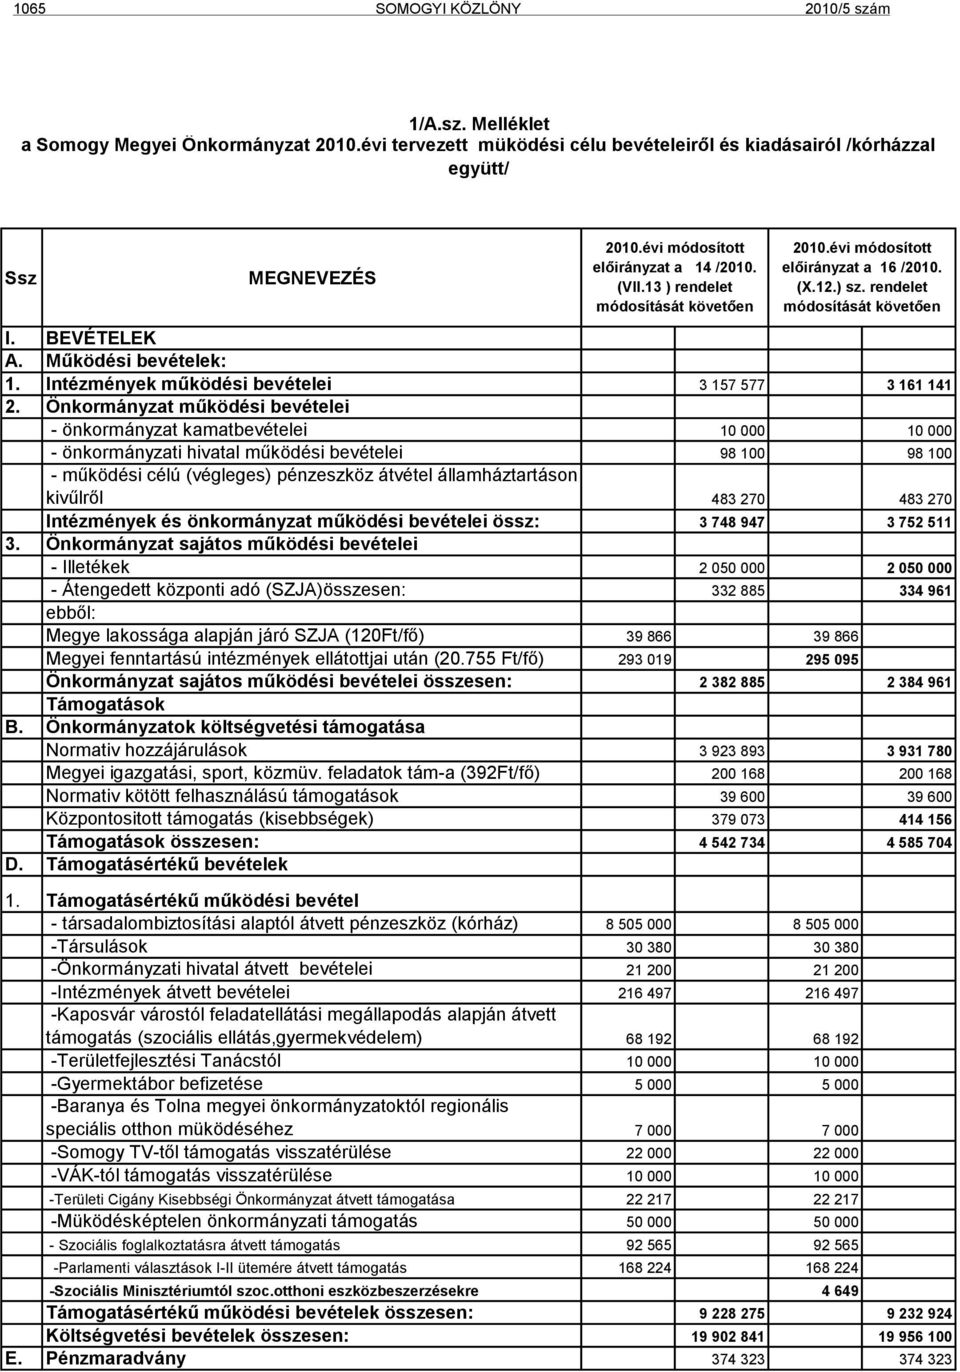 Működési bevételek: 1. Intézmények működési bevételei 3 157 577 3 161 141 2.